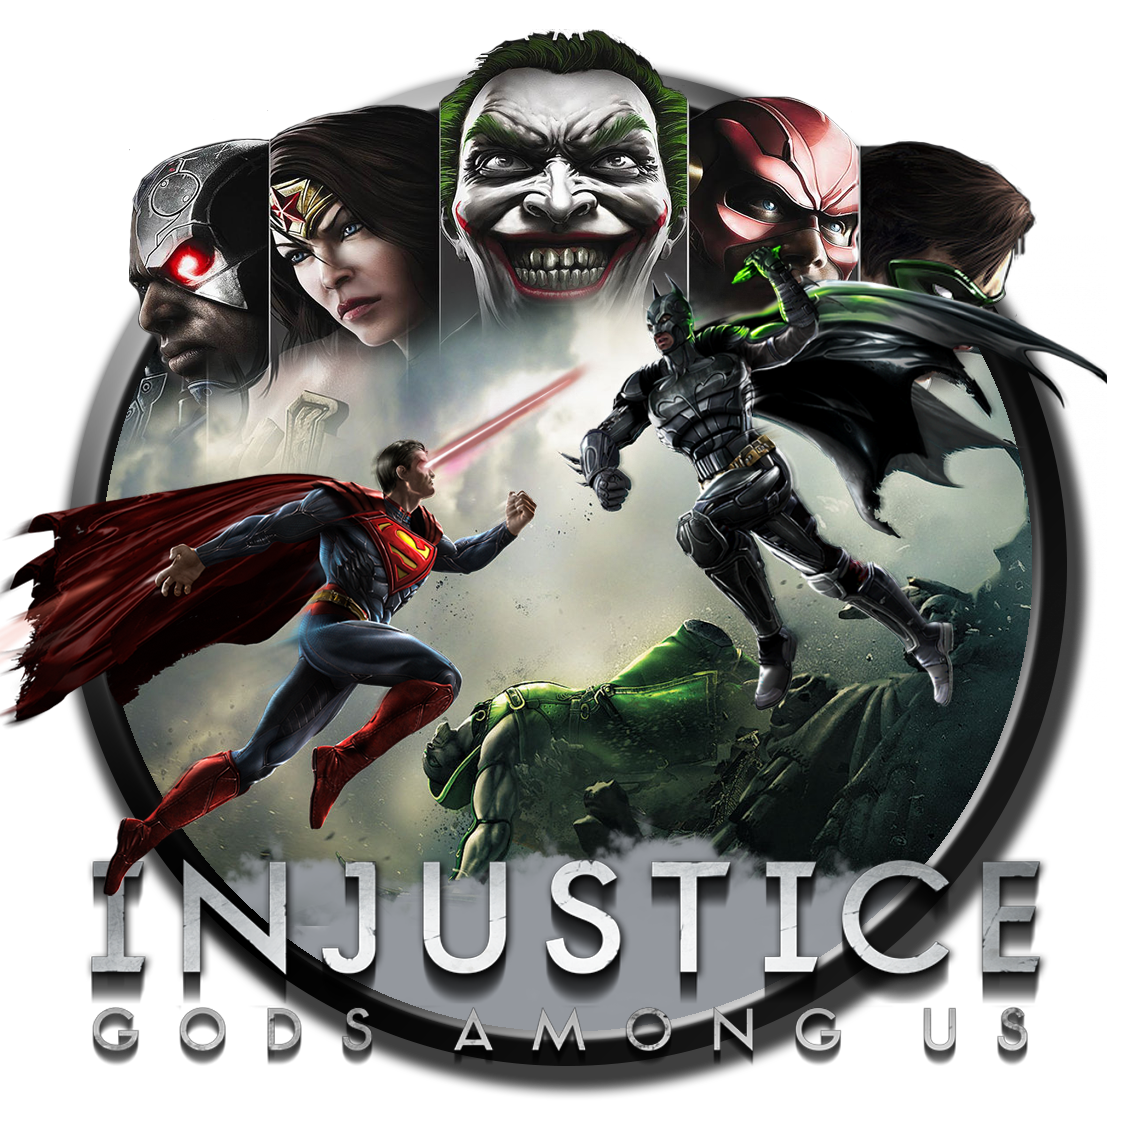 Injustice gods андроид